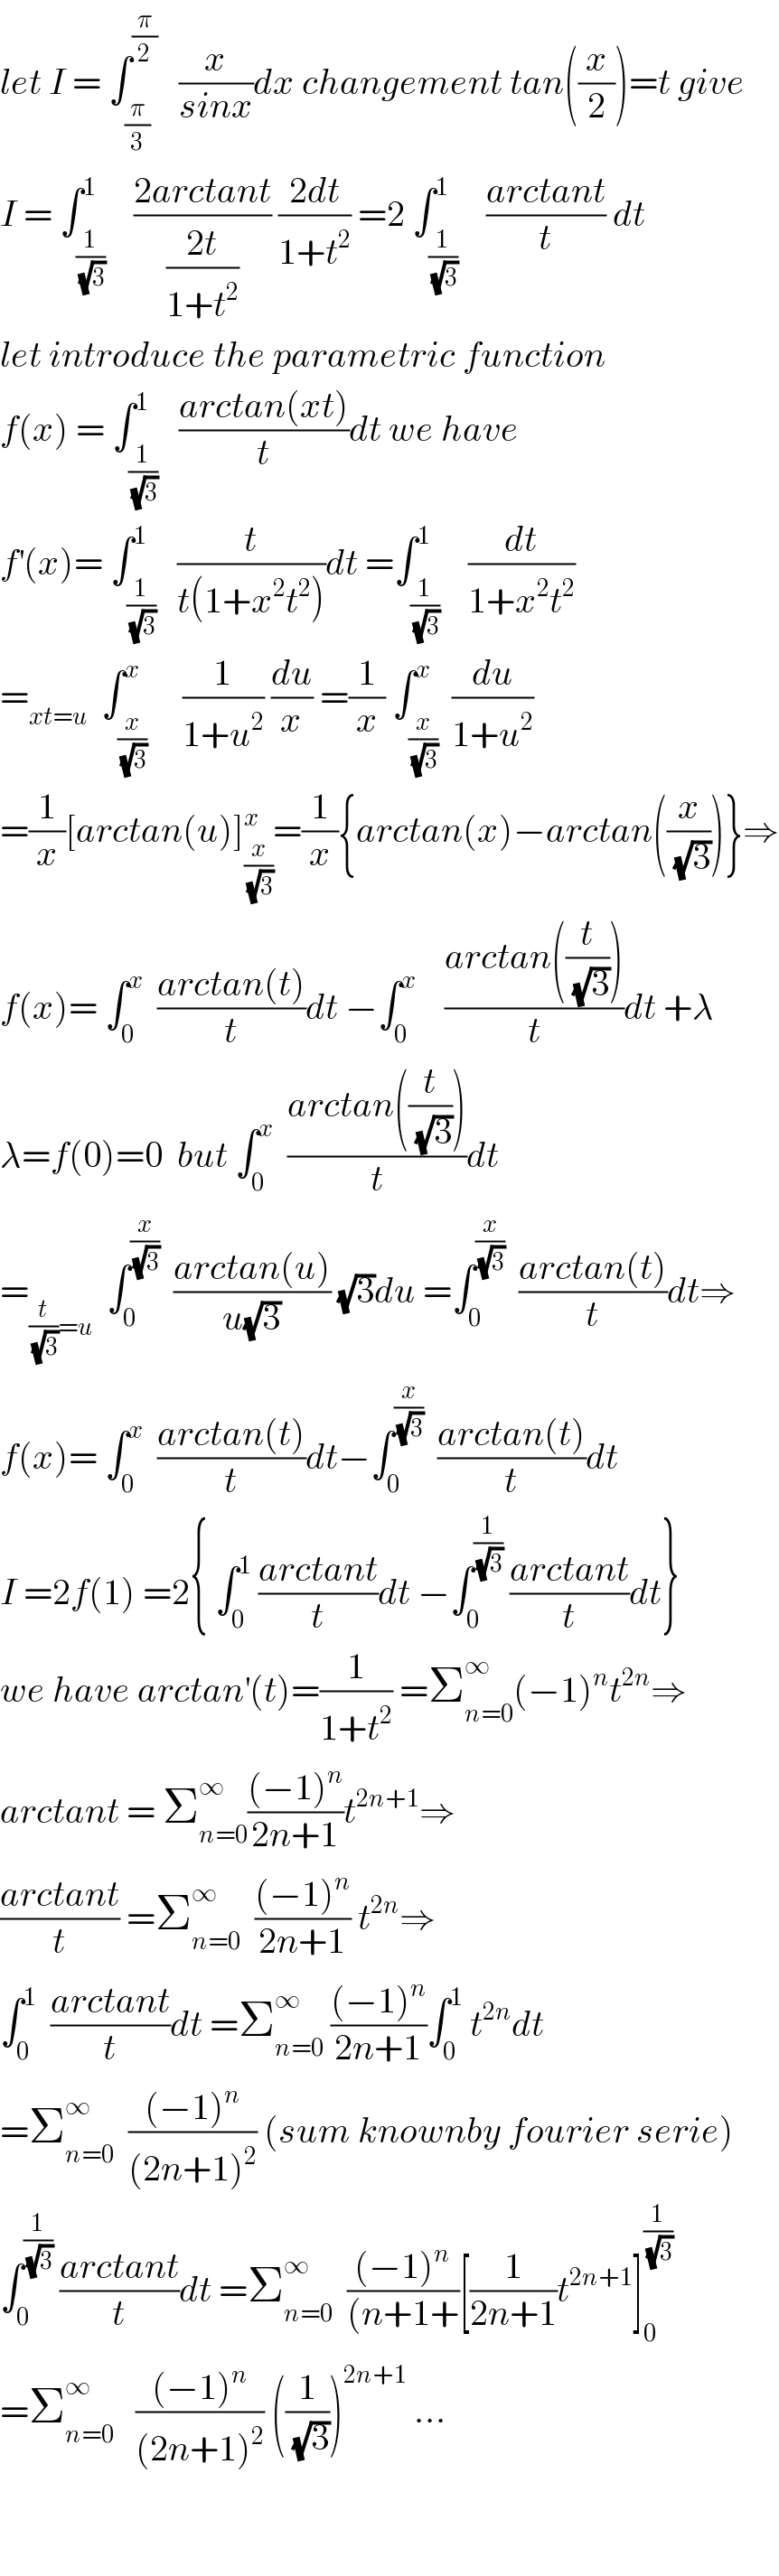 let I = ∫_(π/3) ^(π/2)    (x/(sinx))dx changement tan((x/2))=t give  I = ∫_(1/(√3)) ^1    ((2arctant)/((2t)/(1+t^2 ))) ((2dt)/(1+t^2 )) =2 ∫_(1/(√3)) ^1    ((arctant)/t) dt  let introduce the parametric function  f(x) = ∫_(1/(√3)) ^1   ((arctan(xt))/t)dt we have  f^′ (x)= ∫_(1/(√3)) ^1   (t/(t(1+x^2 t^2 )))dt =∫_(1/(√3)) ^1    (dt/(1+x^2 t^2 ))  =_(xt=u)   ∫_(x/(√3)) ^x     (1/(1+u^2 )) (du/x) =(1/x) ∫_(x/(√3)) ^x  (du/(1+u^2 ))  =(1/x)[arctan(u)]_(x/(√3)) ^x =(1/x){arctan(x)−arctan((x/(√3)))}⇒  f(x)= ∫_0 ^x   ((arctan(t))/t)dt −∫_0 ^x     ((arctan((t/(√3))))/t)dt +λ  λ=f(0)=0  but ∫_0 ^x   ((arctan((t/(√3))))/t)dt  =_((t/(√3))=u)   ∫_0 ^(x/(√3))   ((arctan(u))/(u(√3))) (√3)du =∫_0 ^(x/(√3))   ((arctan(t))/t)dt⇒  f(x)= ∫_0 ^x   ((arctan(t))/t)dt−∫_0 ^(x/(√3))   ((arctan(t))/t)dt  I =2f(1) =2{ ∫_0 ^1  ((arctant)/t)dt −∫_0 ^(1/(√3))  ((arctant)/t)dt}  we have arctan^′ (t)=(1/(1+t^2 )) =Σ_(n=0) ^∞ (−1)^n t^(2n) ⇒  arctant = Σ_(n=0) ^∞ (((−1)^n )/(2n+1))t^(2n+1) ⇒  ((arctant)/t) =Σ_(n=0) ^∞   (((−1)^n )/(2n+1)) t^(2n) ⇒  ∫_0 ^1   ((arctant)/t)dt =Σ_(n=0) ^∞  (((−1)^n )/(2n+1))∫_0 ^1  t^(2n) dt  =Σ_(n=0) ^∞   (((−1)^n )/((2n+1)^2 )) (sum knownby fourier serie)  ∫_0 ^(1/(√3))  ((arctant)/t)dt =Σ_(n=0) ^∞   (((−1)^n )/((n+1+))[(1/(2n+1))t^(2n+1) ]_0 ^(1/(√3))   =Σ_(n=0) ^∞    (((−1)^n )/((2n+1)^2 )) ((1/(√3)))^(2n+1)  ...      